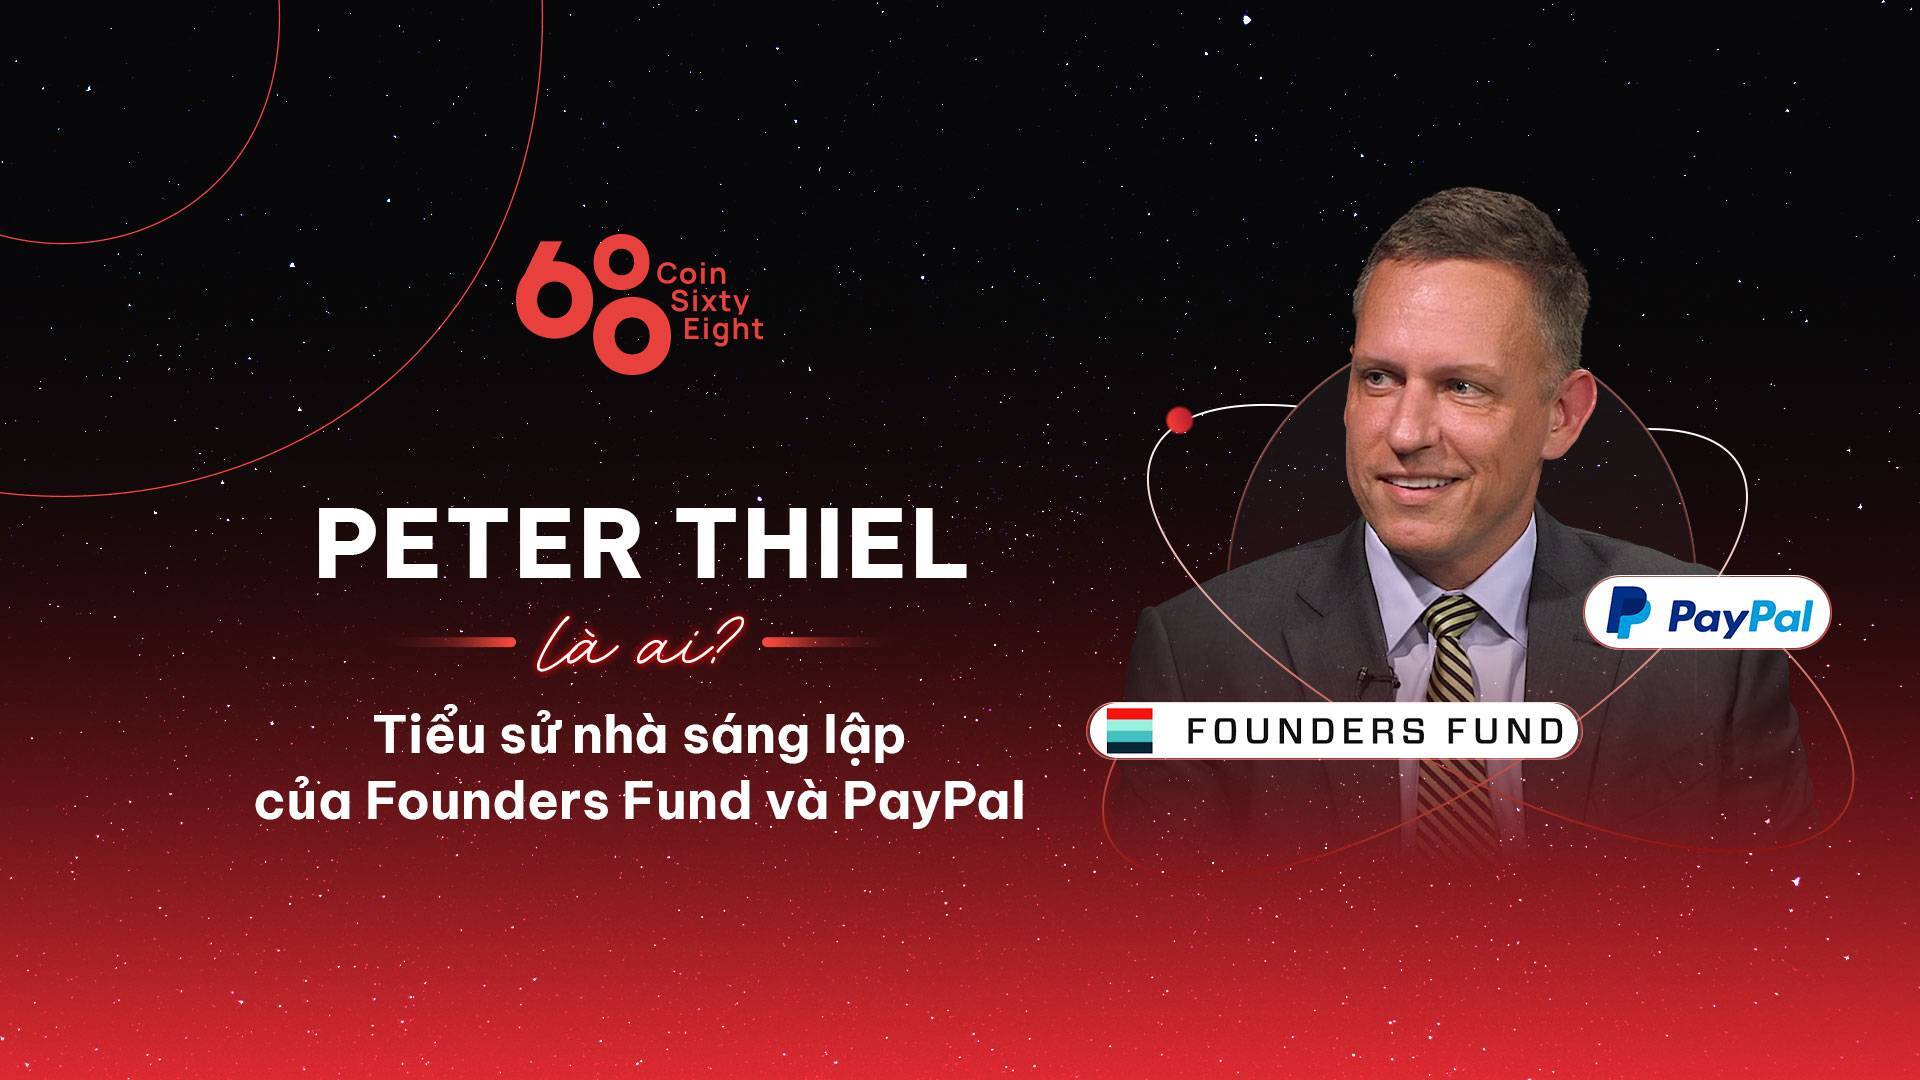 Peter Thiel Là Ai Tiểu Sử Nhà Sáng Lập Của Founders Fund Và Paypal